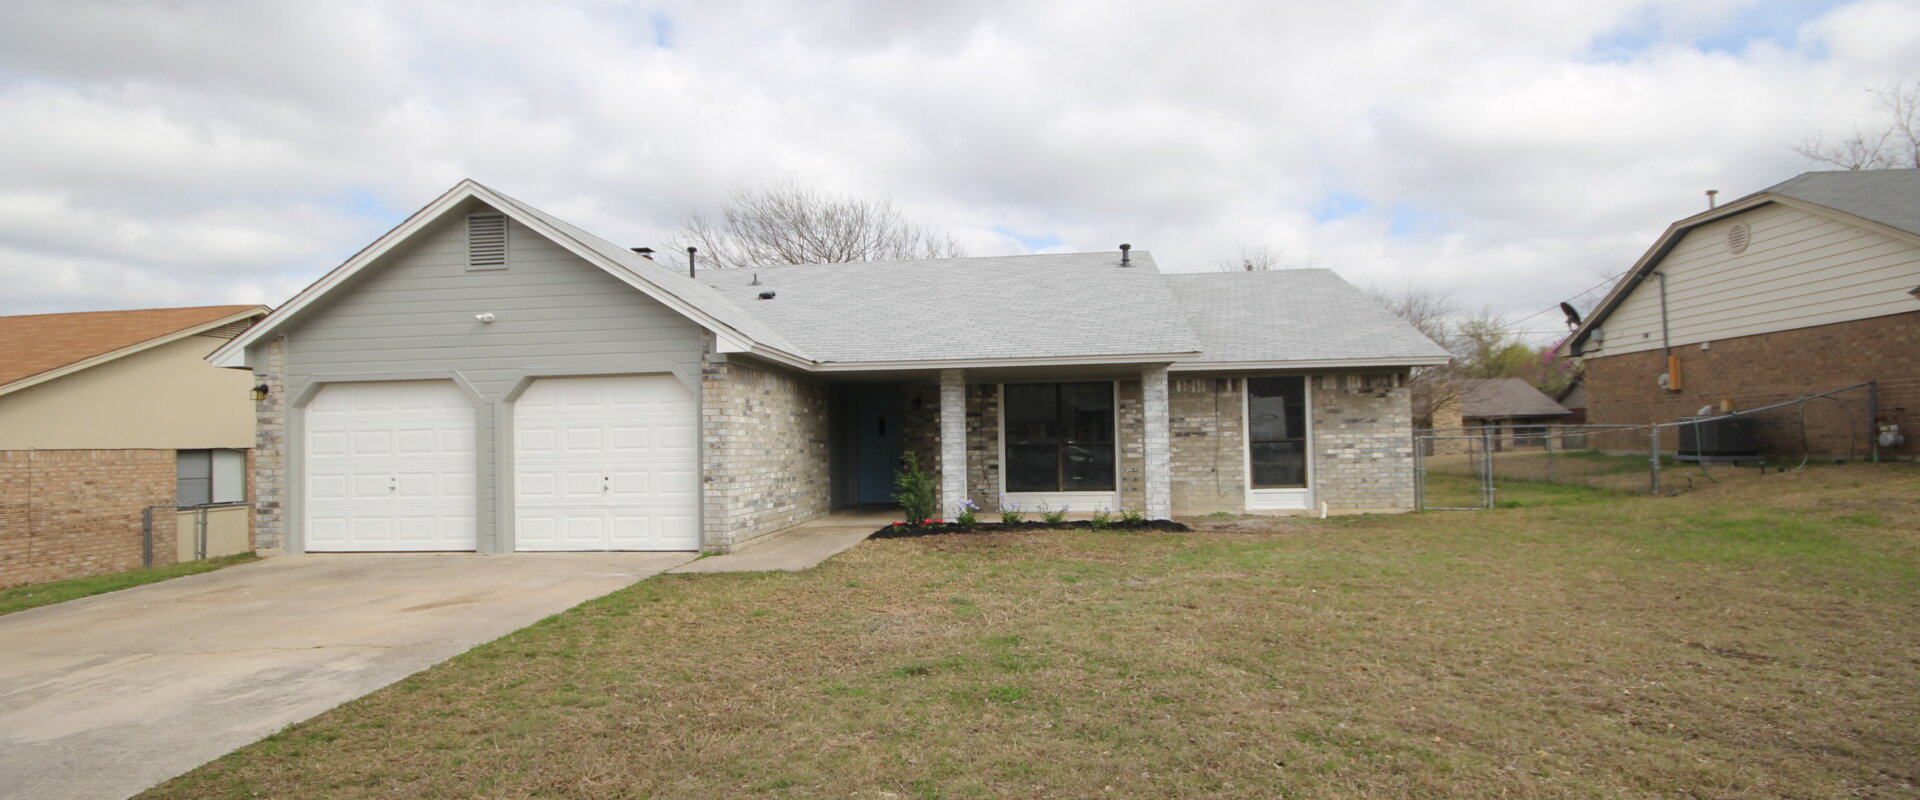 Home cash buyer in Killeen Texas